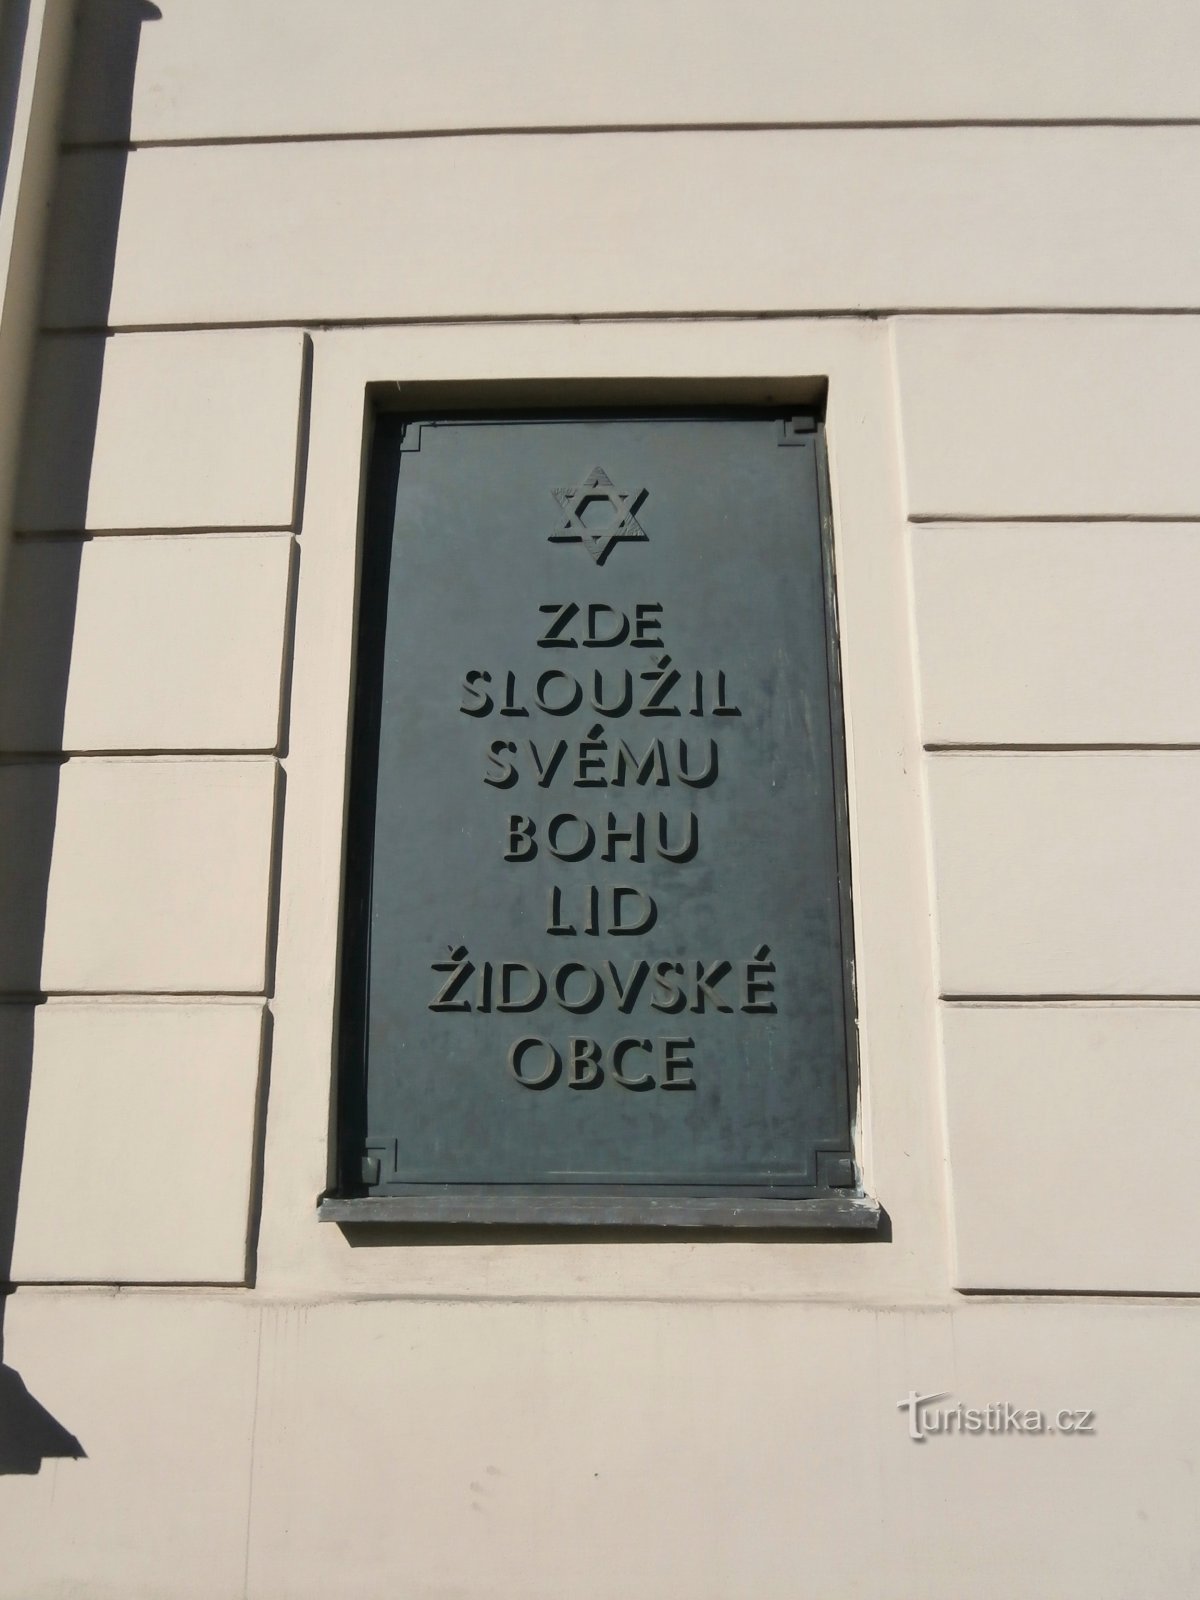 Tấm bảng tưởng niệm tại giáo đường Do Thái cũ (Hradec Králové)